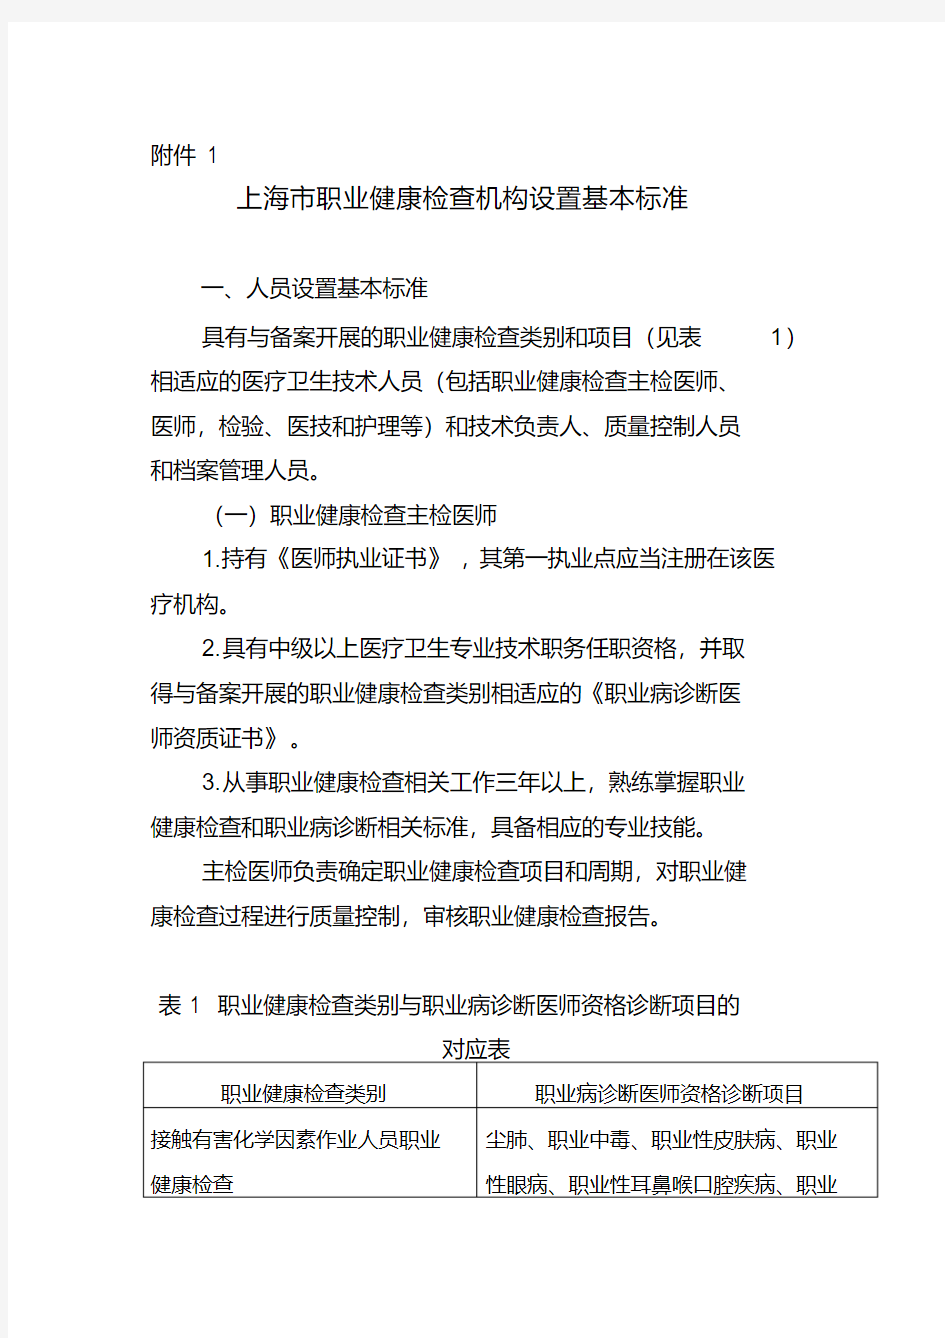 2020年上海市职业健康检查机构设置基本标准